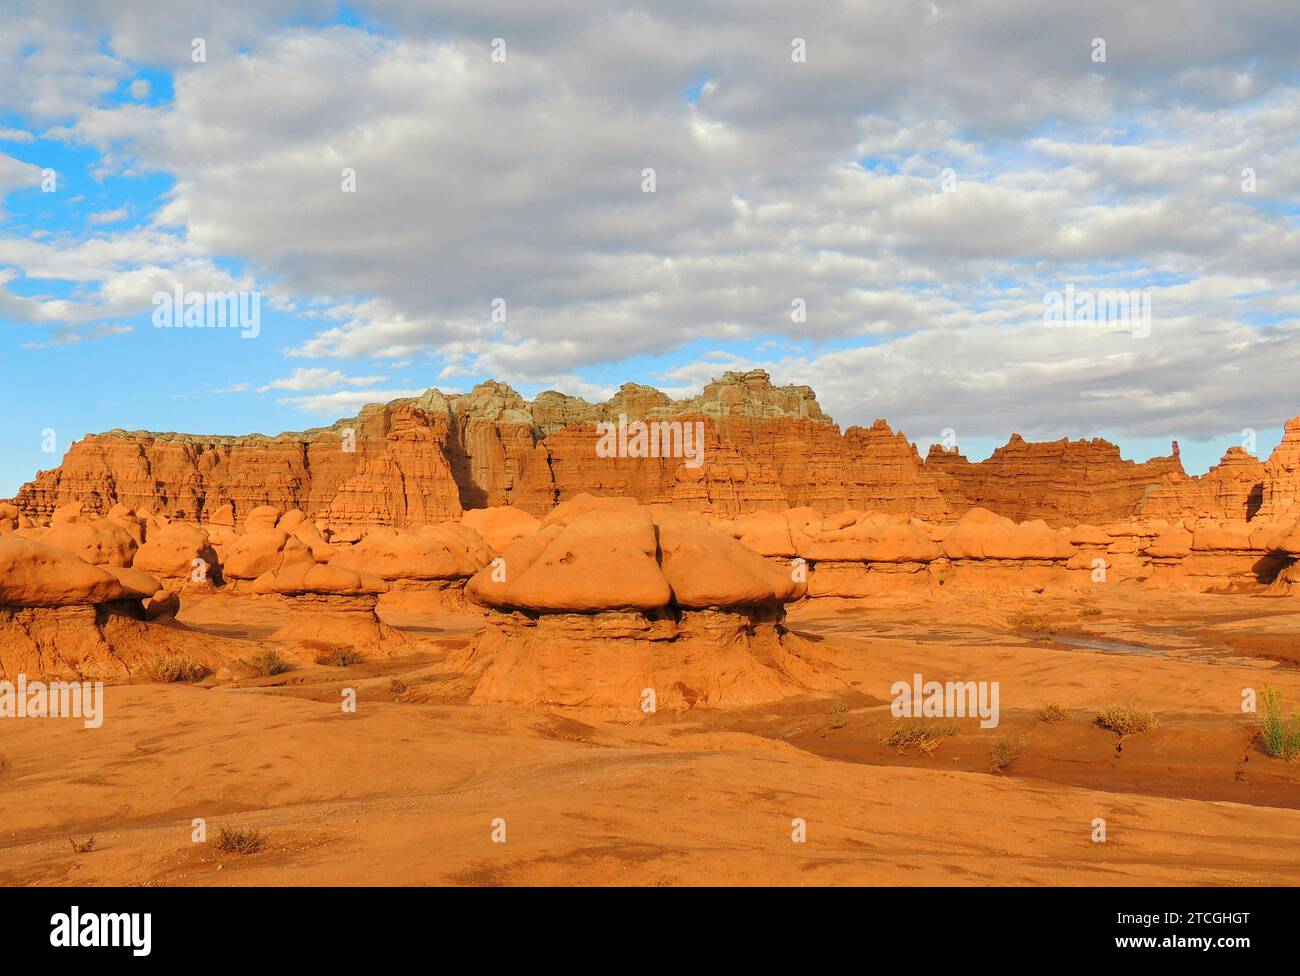 gli hoodoos di roccia rossa dalla forma bizzarra nel parco statale della valle di goblin, utah, al crepuscolo Foto Stock